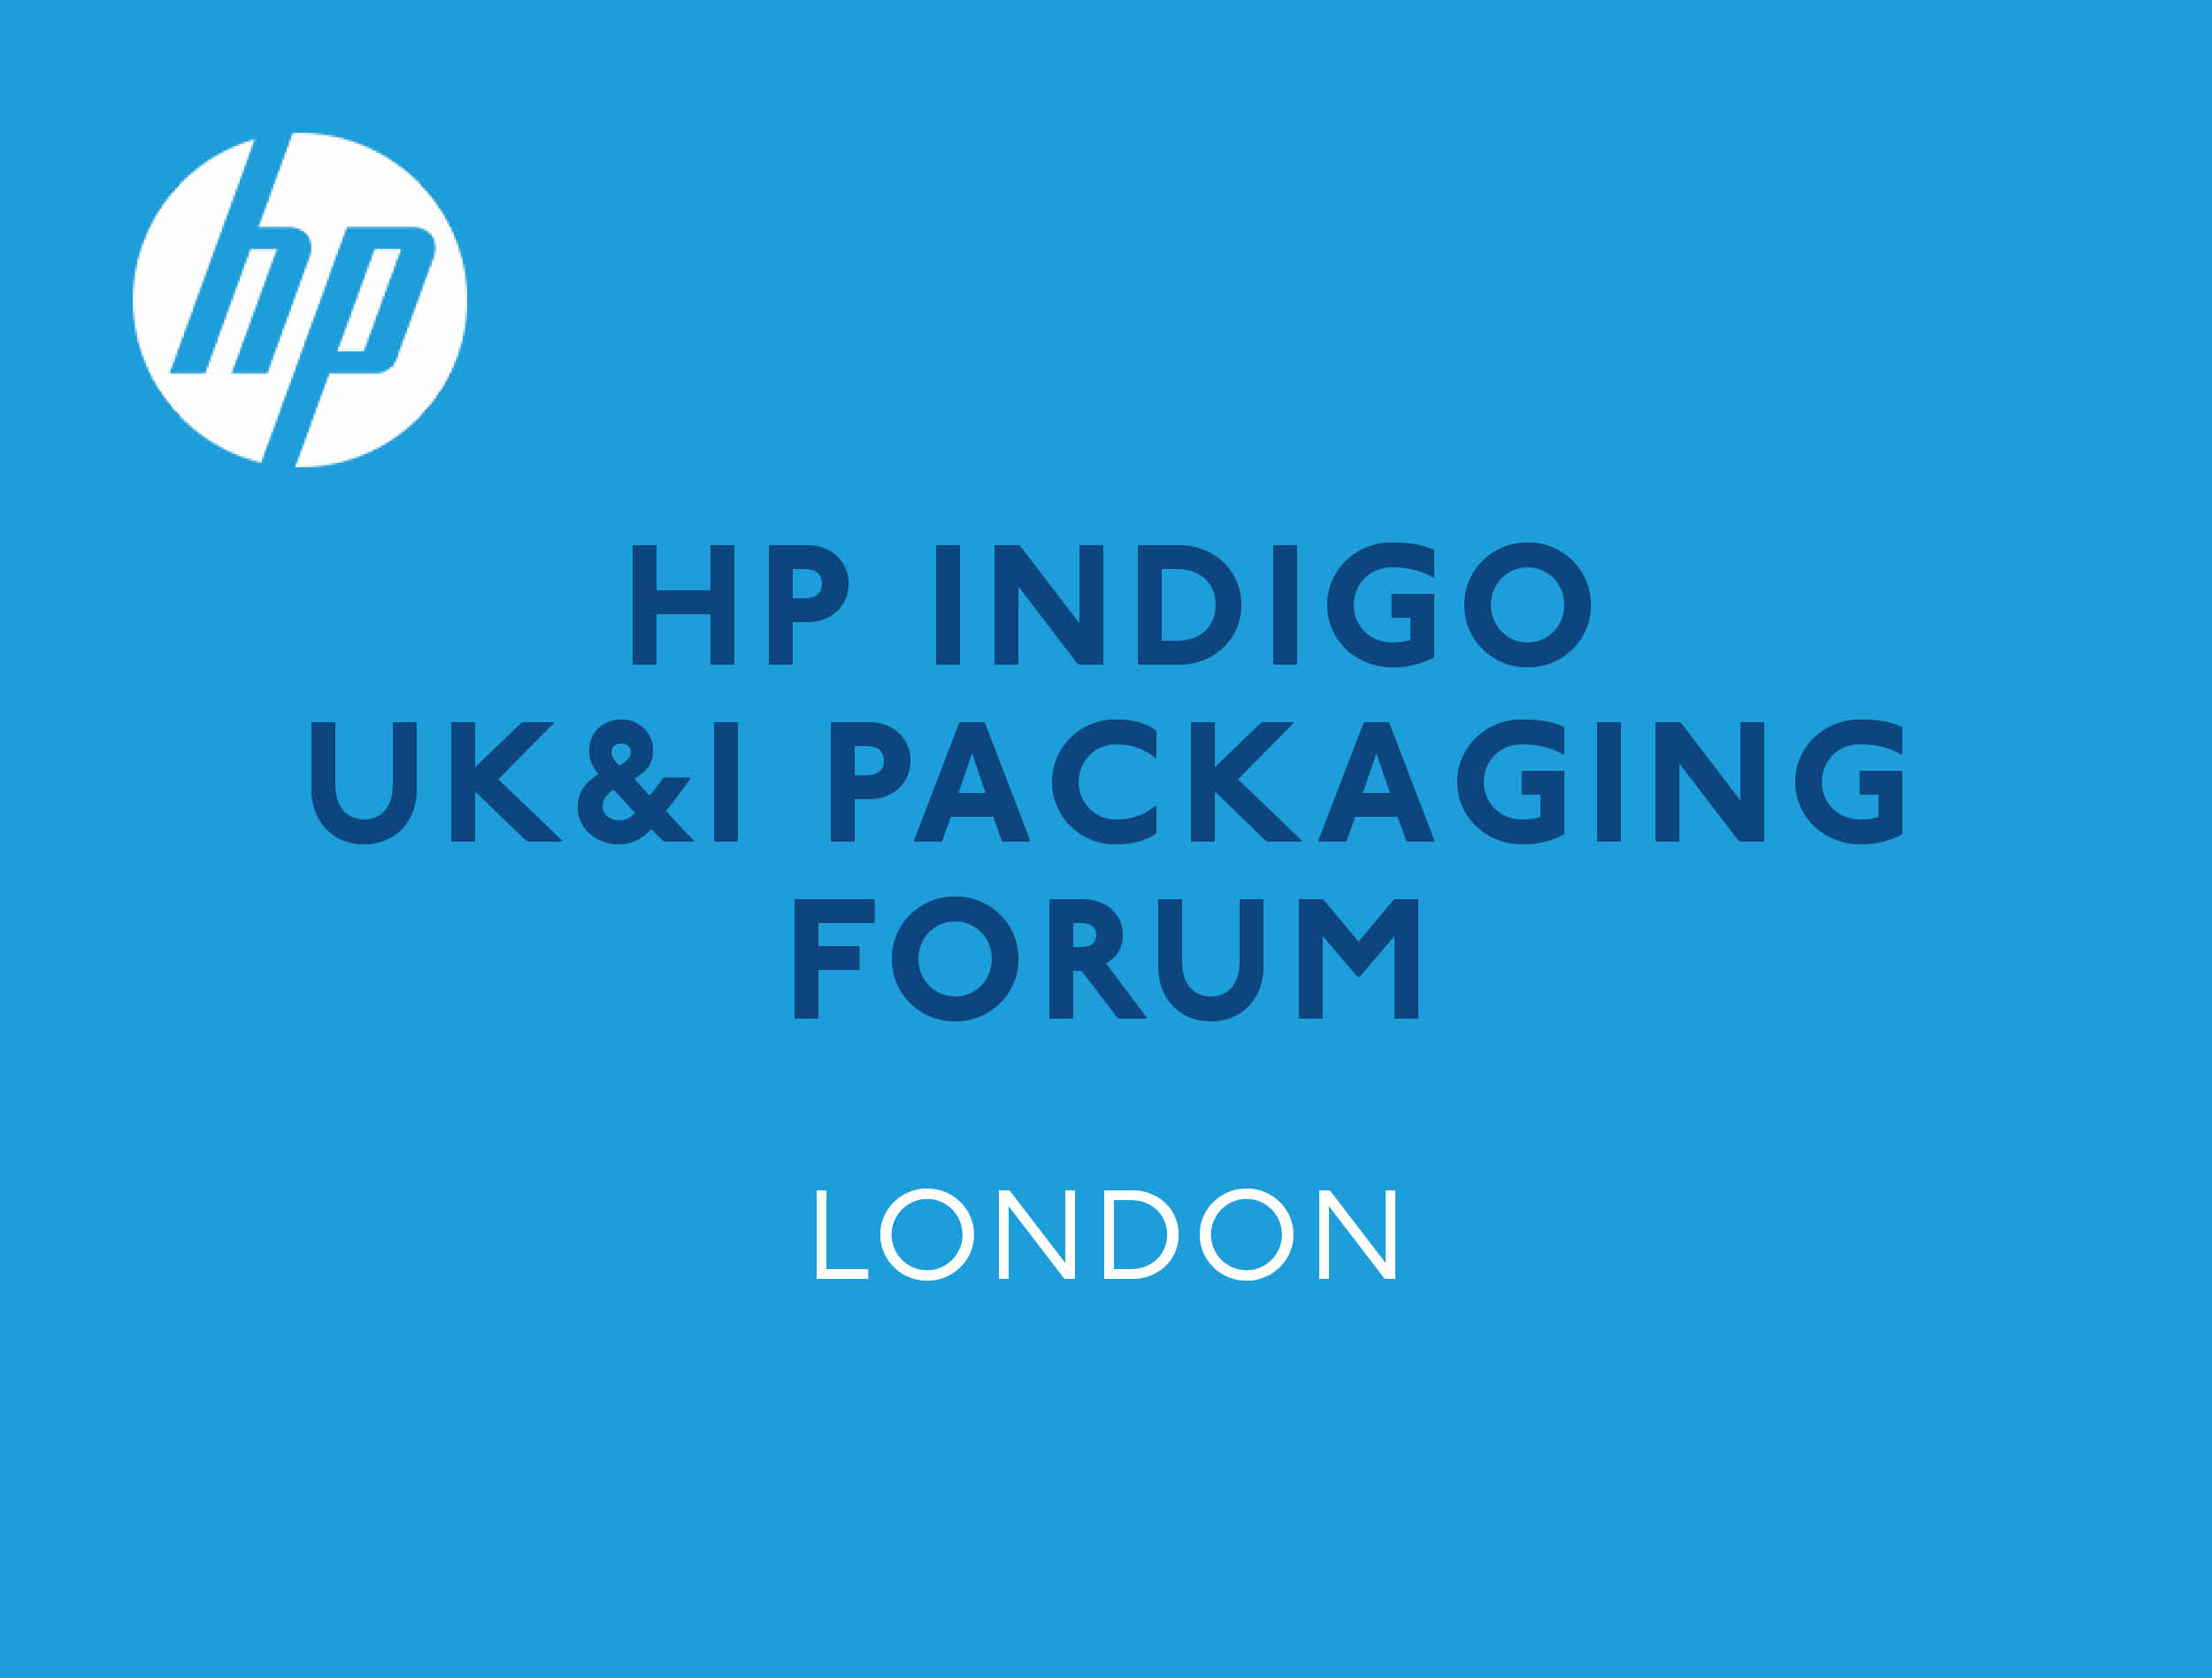 HP Indigo UK&I Packaging Forum - London